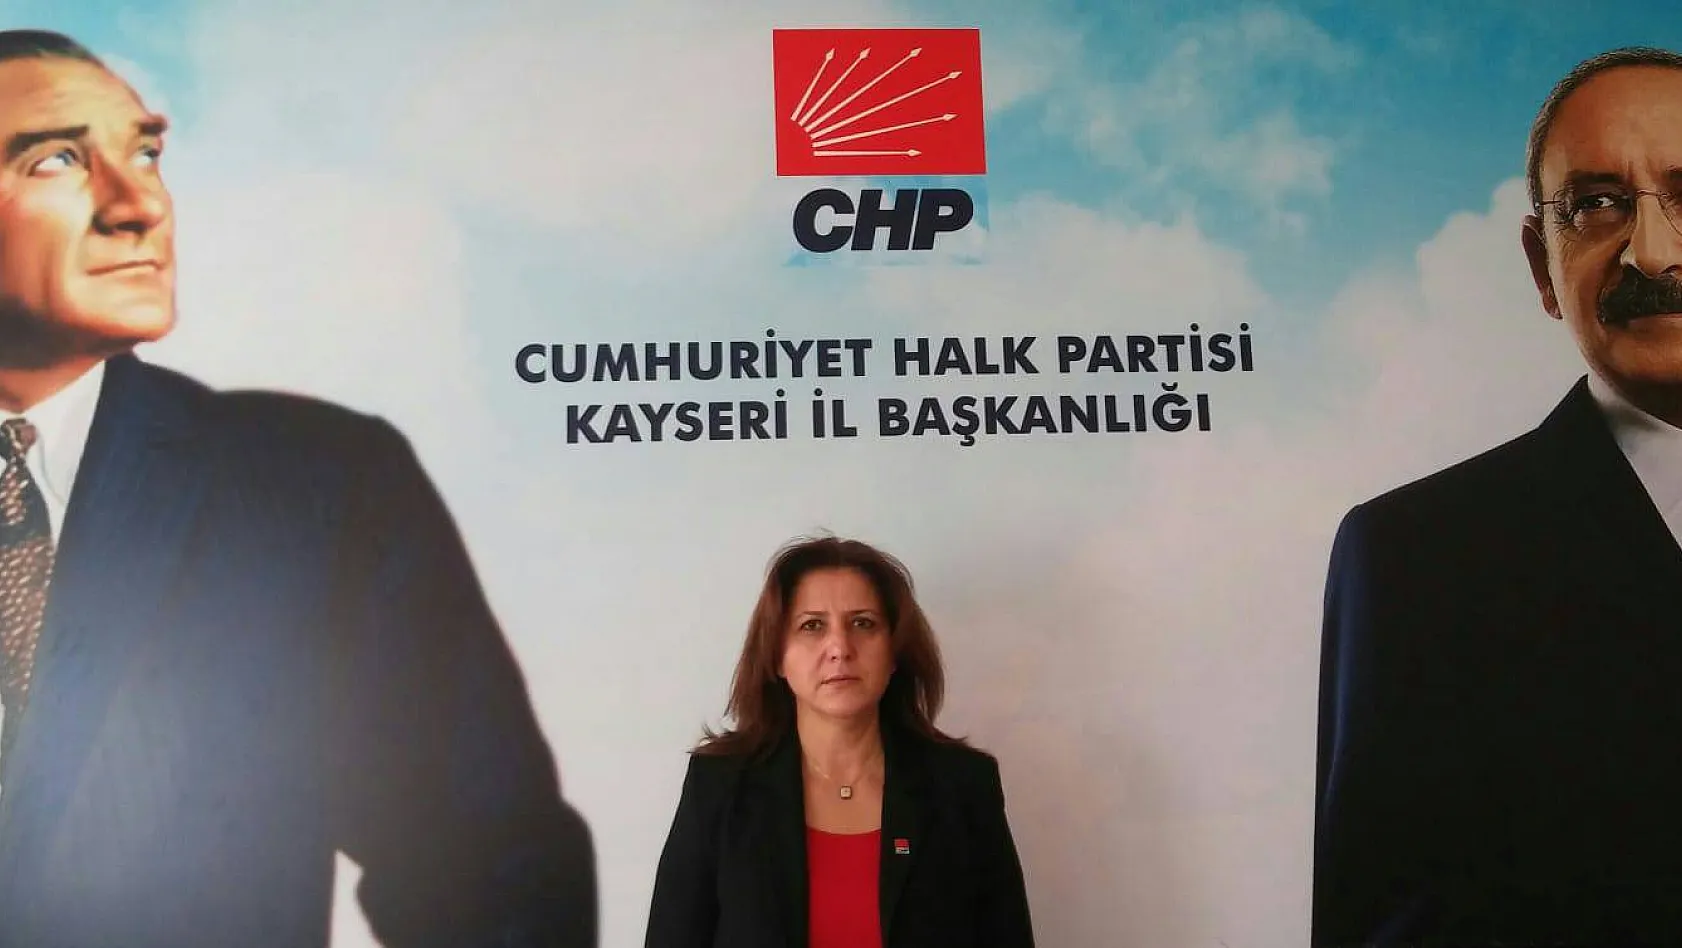 CHP İl Başkanı Özer: Savcılar ne yapacak? Kimler mafyaya teslim olacak? Bunu hep birlikte göreceğiz